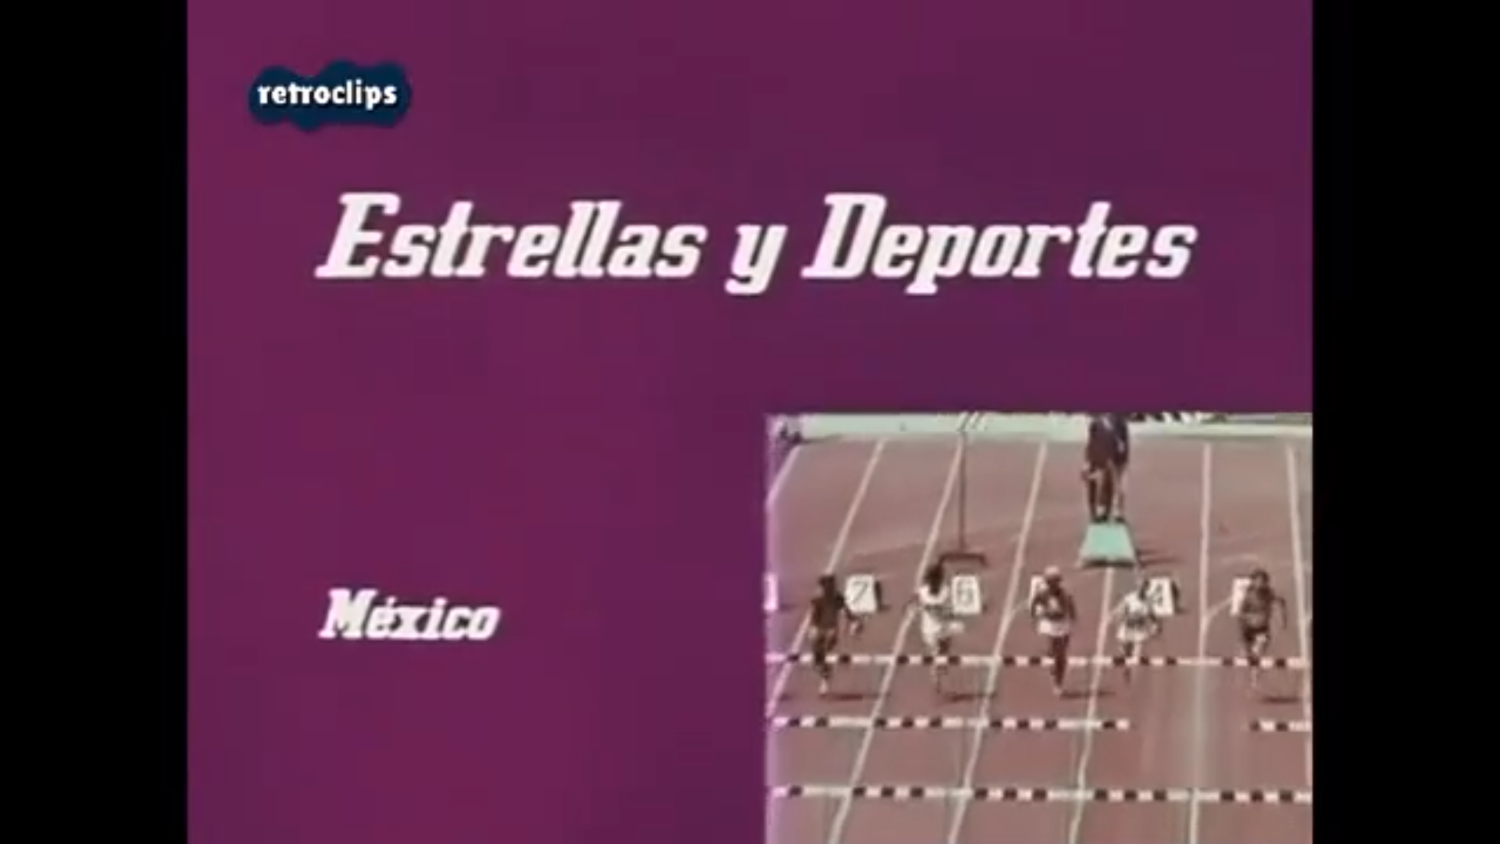 Звезды и спорт на XIX Олимпиаде в Мексике 1968